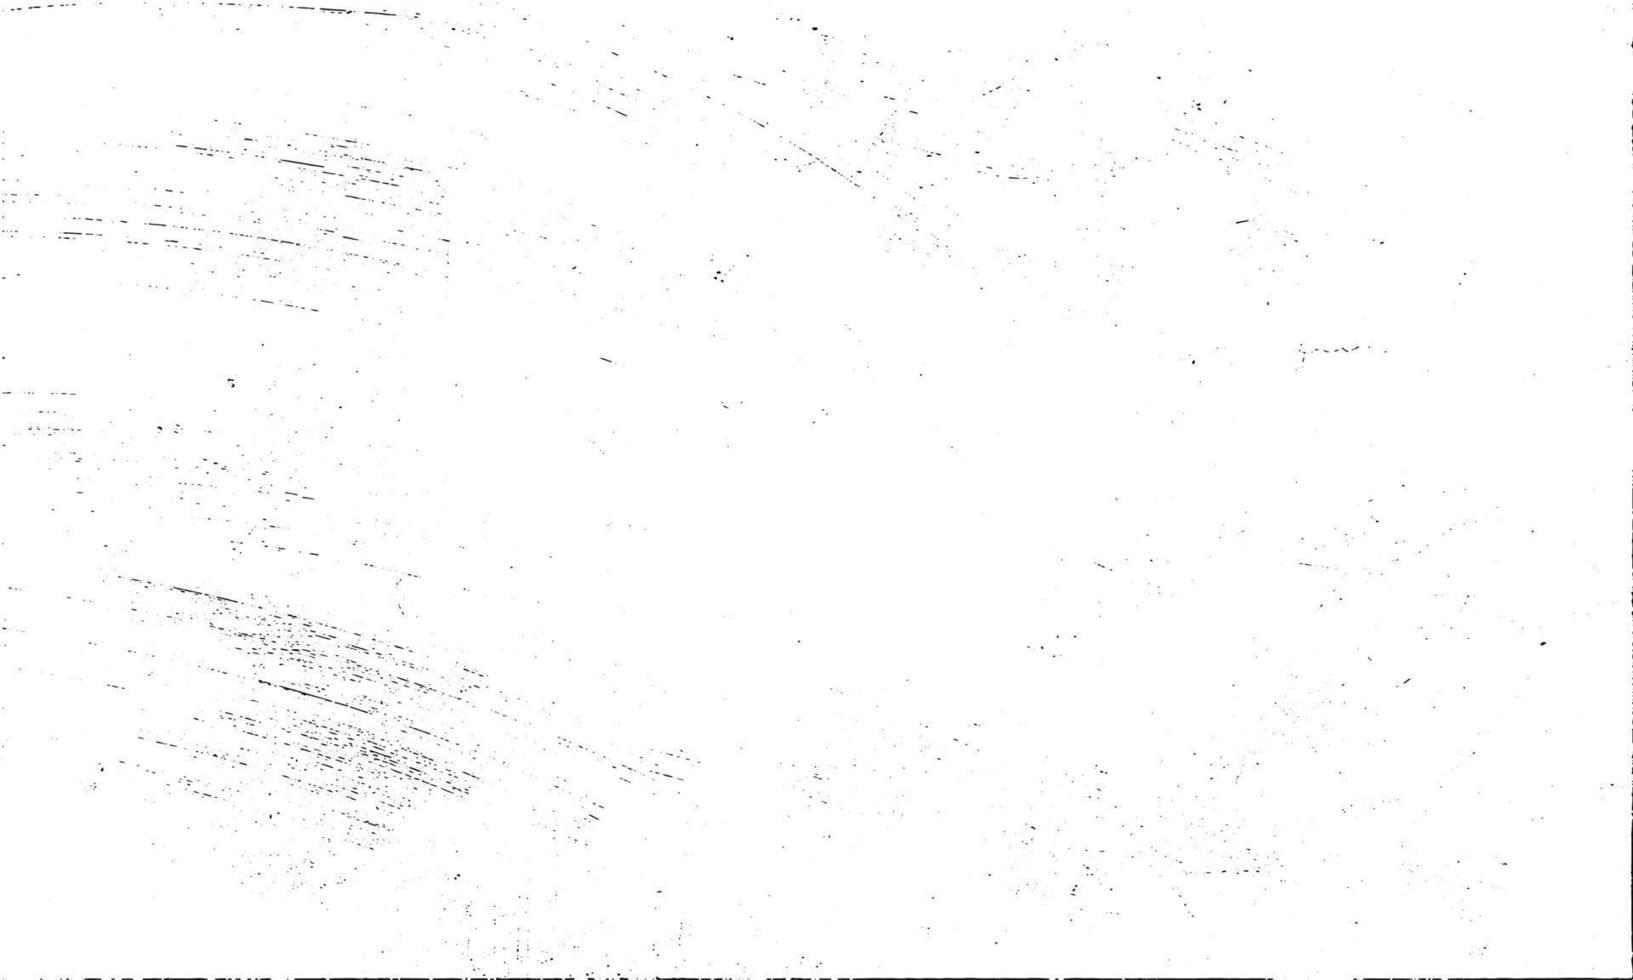 smutsig kornig stämpel och repor täcka över vit bakgrund. grunge bedrövad damm partikel vit och svart. vektor illustration